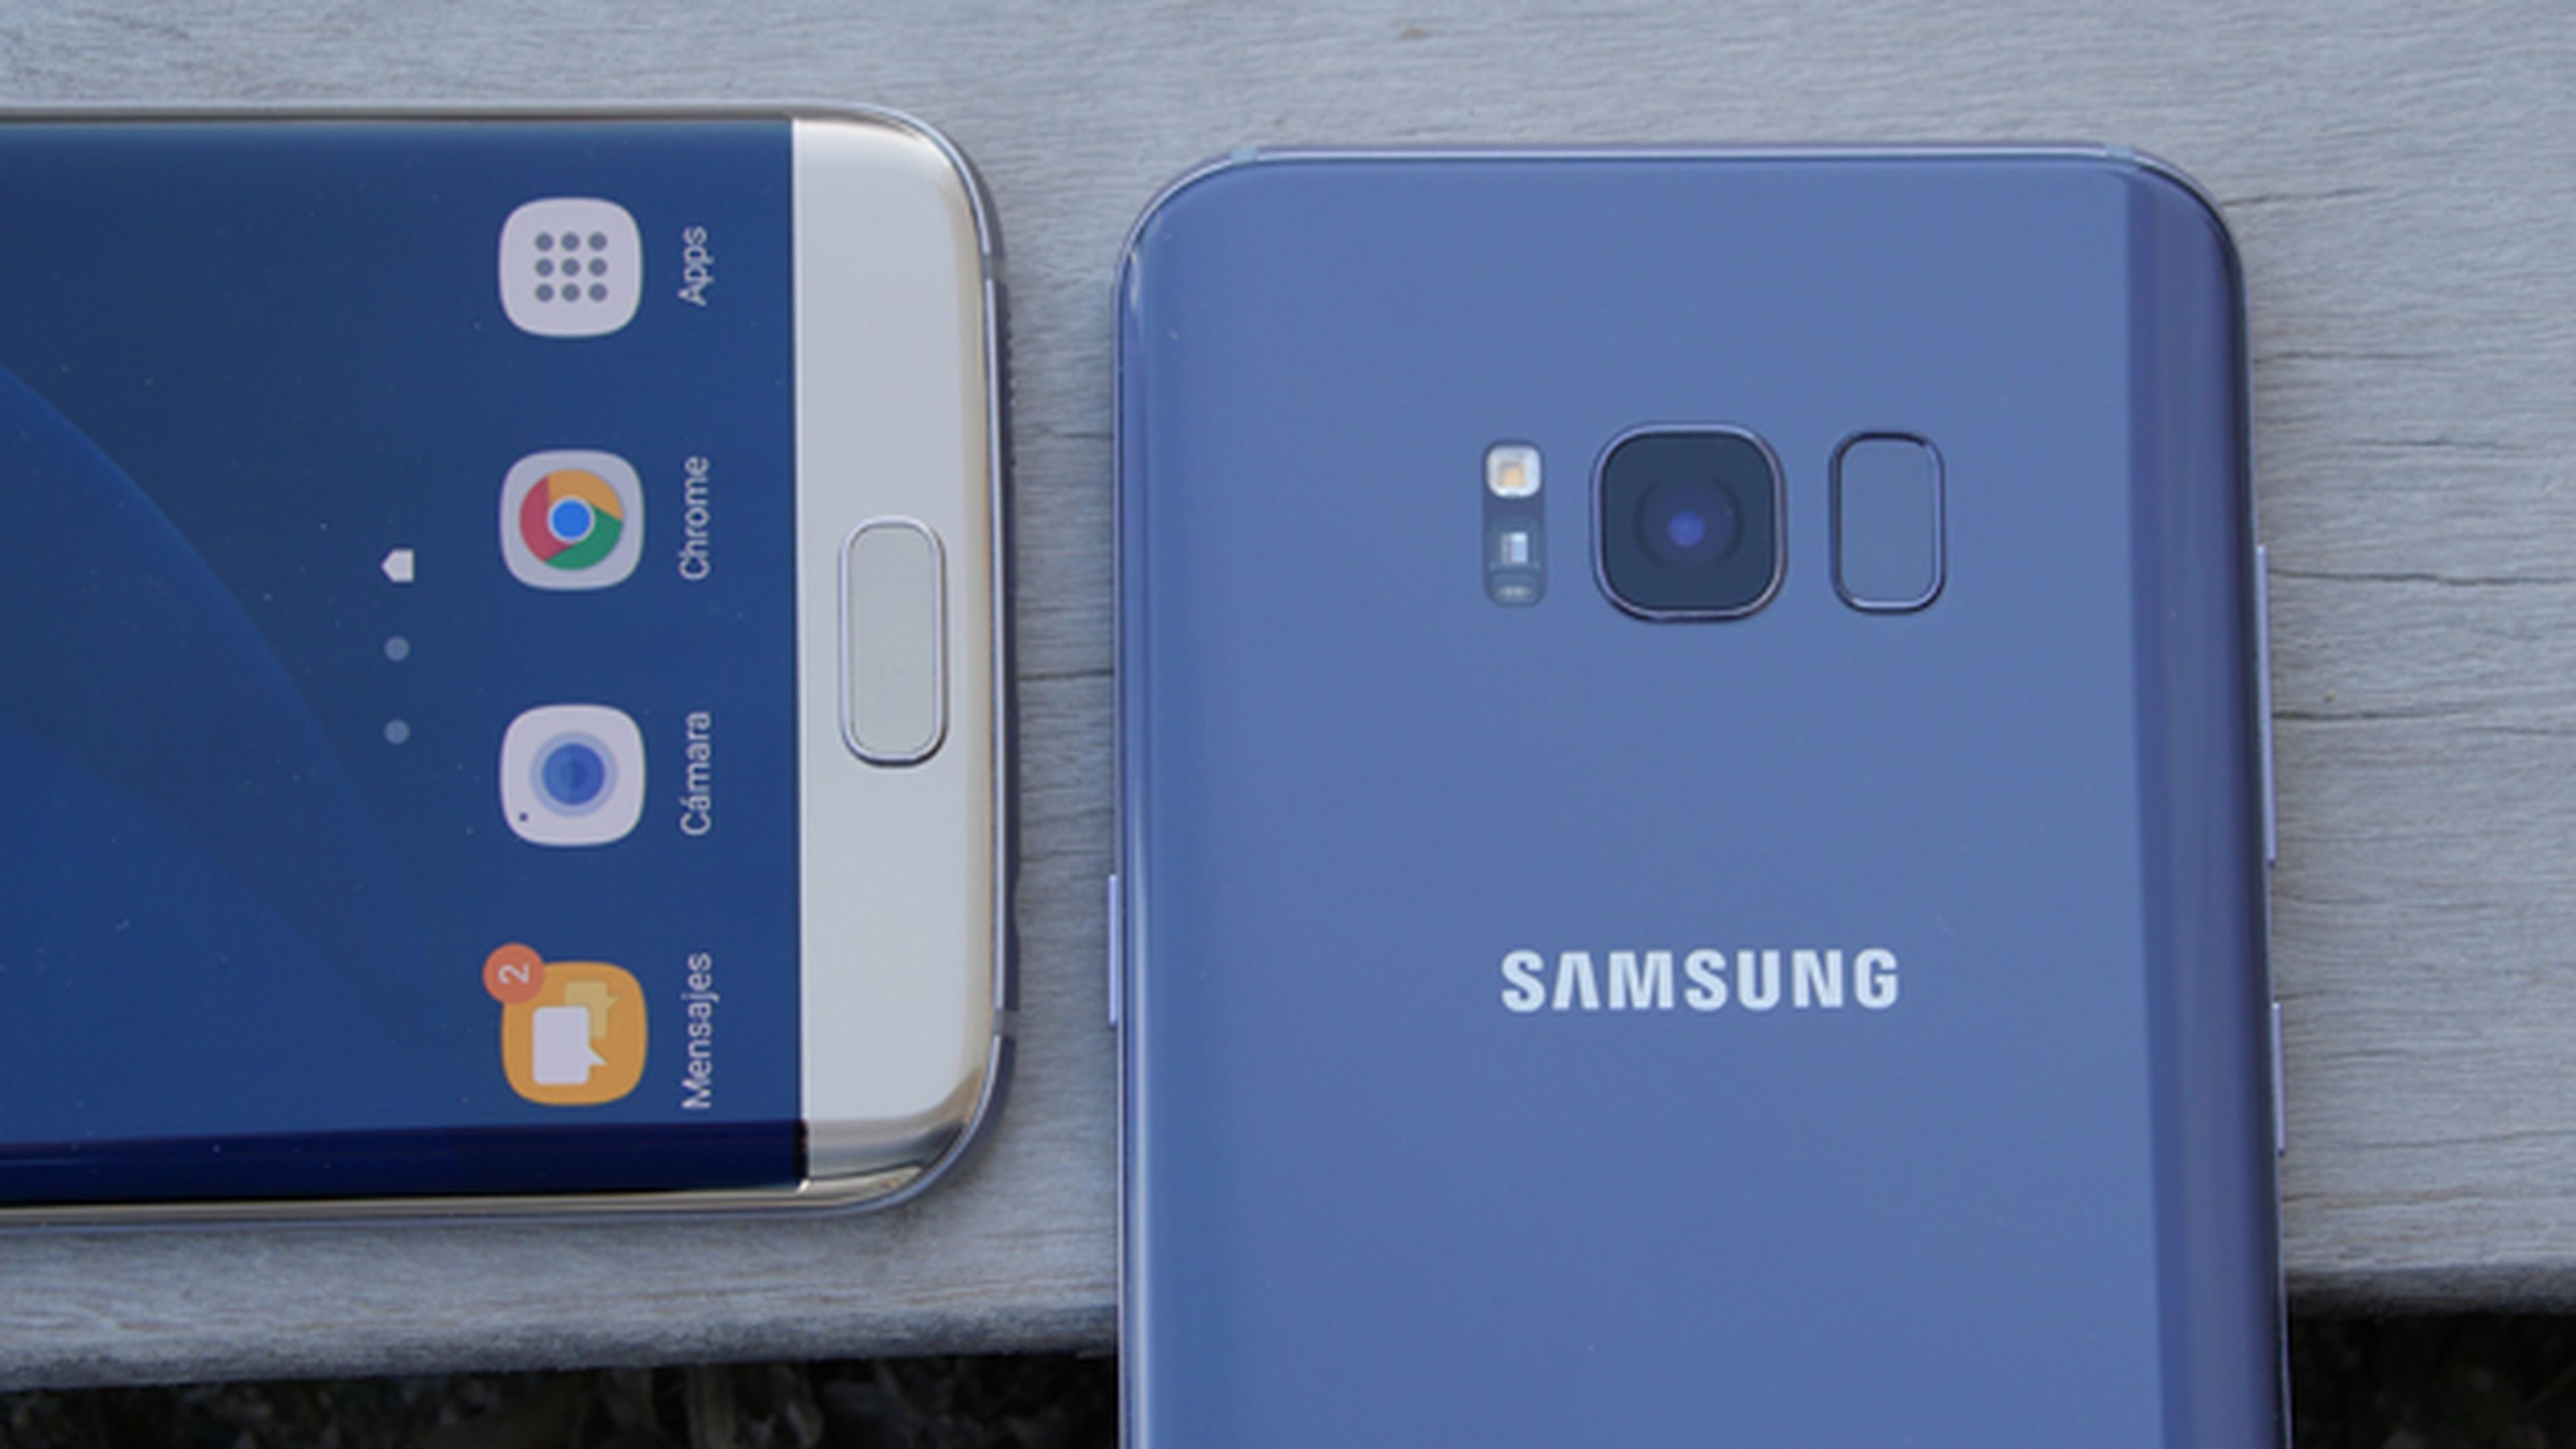 La posición del lector de huellas es la principal diferencia entre el Samsung Galaxy S8 Plus y el S7 Edge